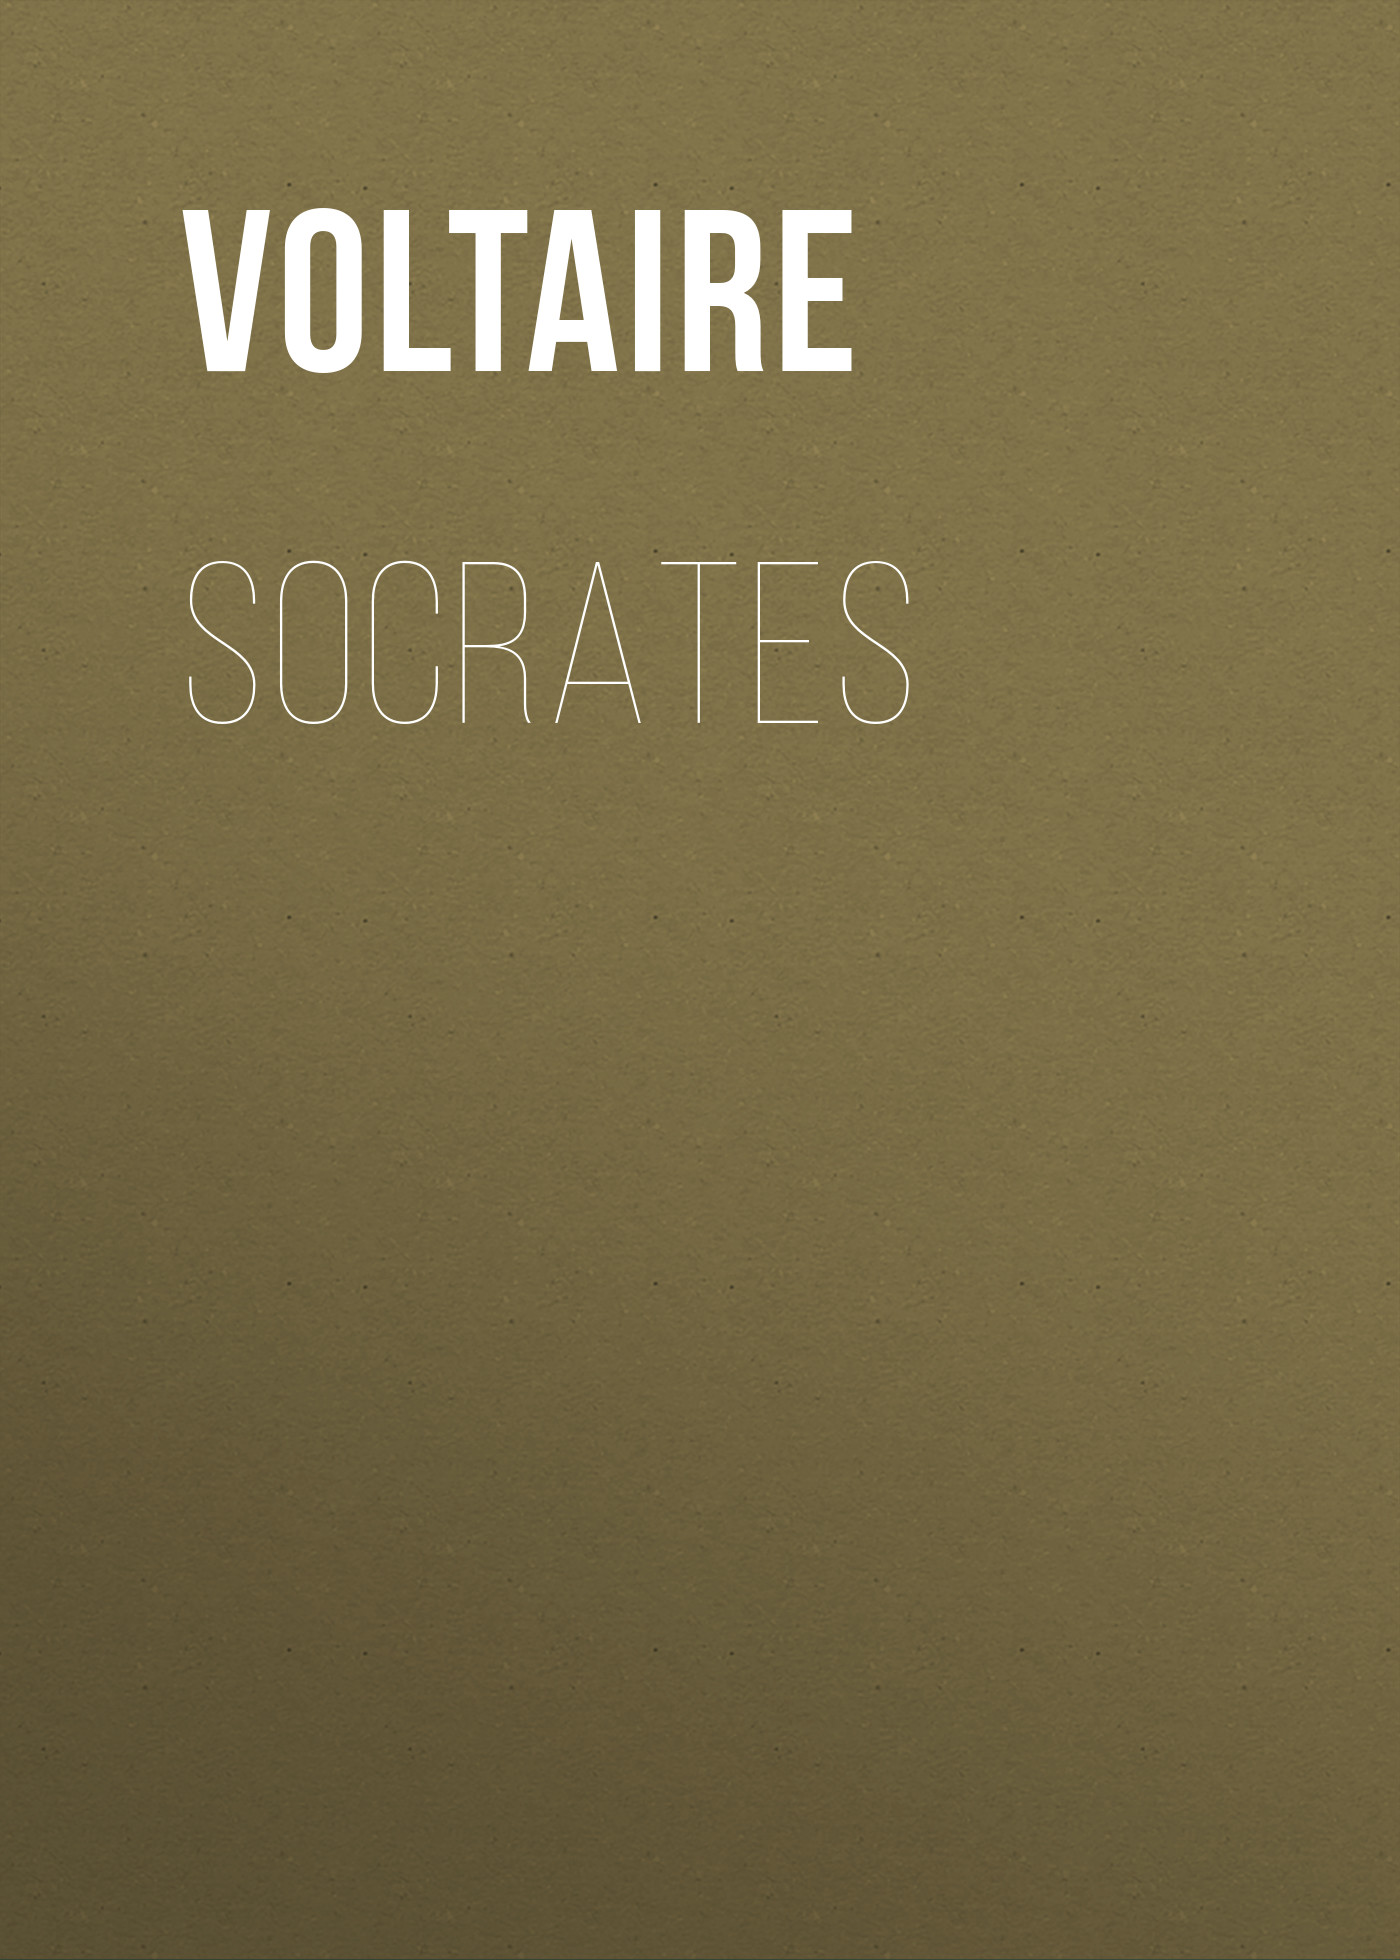 Книга Socrates из серии , созданная  Voltaire, может относится к жанру Литература 18 века, Зарубежная классика. Стоимость электронной книги Socrates с идентификатором 25560756 составляет 0 руб.